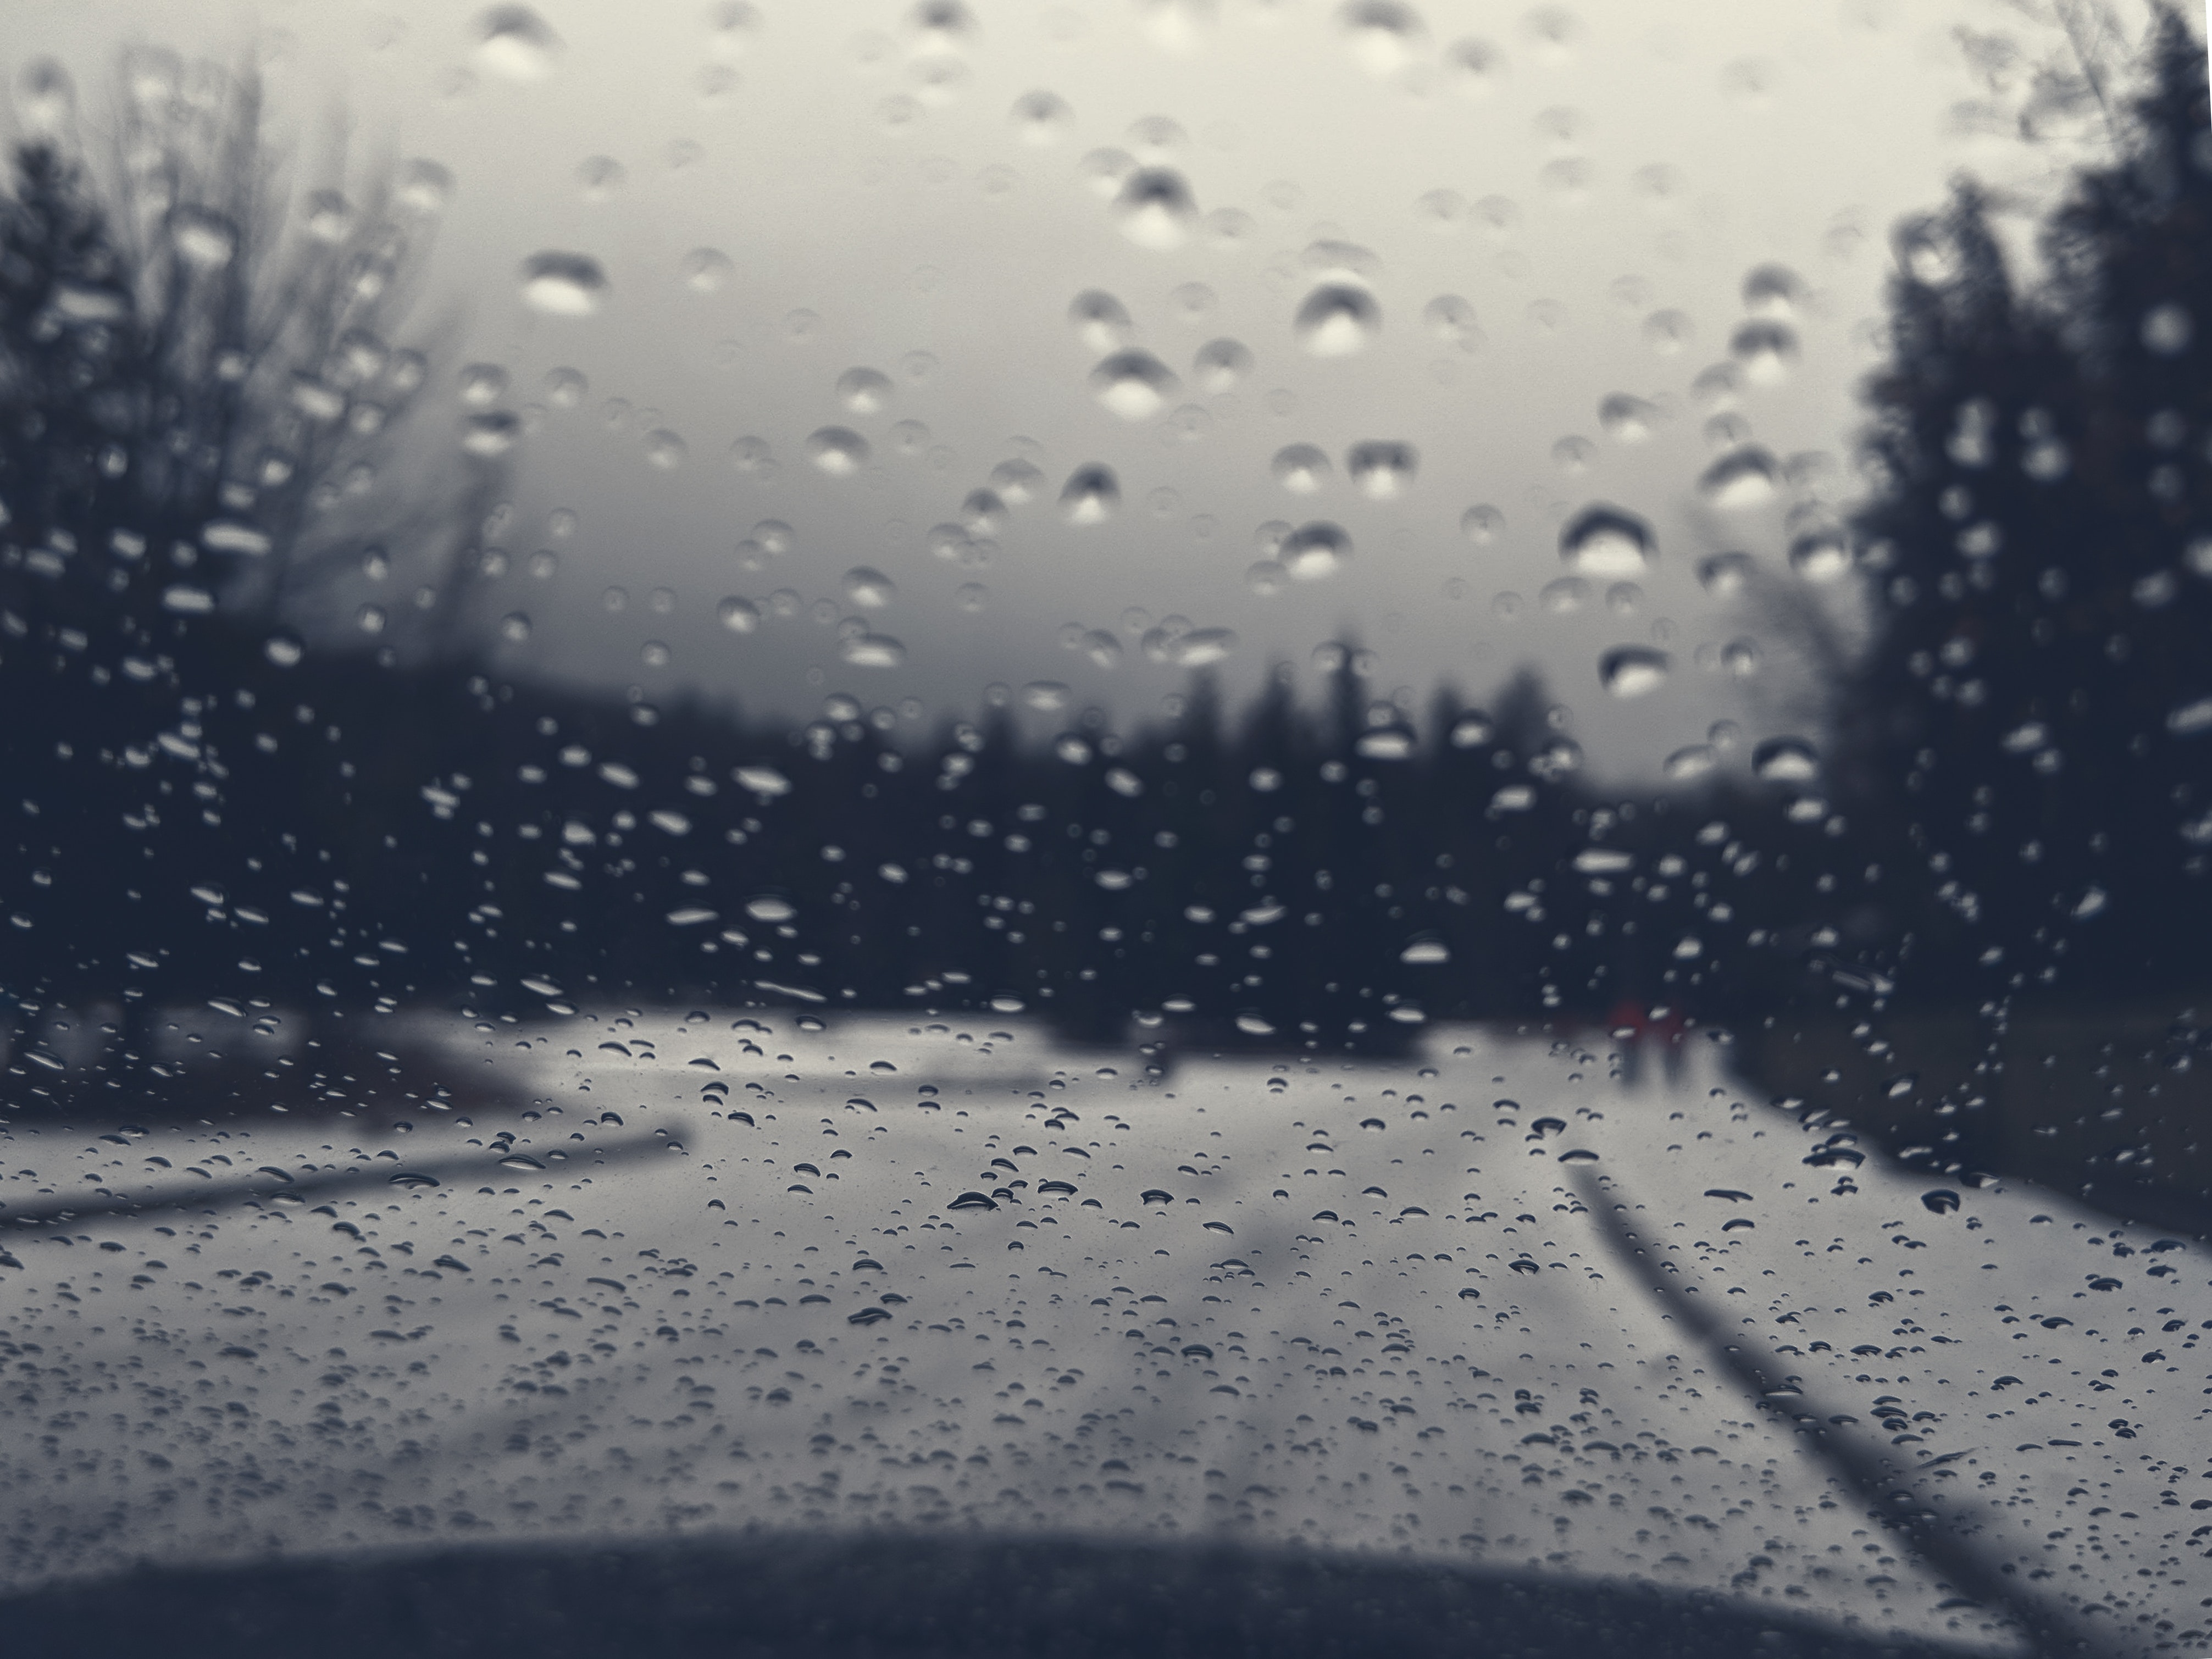 Thưởng thức hình ảnh mưa buồn đẹp sẽ mang lại cho bạn cảm giác đầy cảm xúc. Những giọt mưa rơi như những nỗi buồn của cuộc đời, nhưng lại tạo nên một vẻ đẹp thật sự đặc biệt. Hãy cùng chiêm ngưỡng hình ảnh mưa buồn đẹp để tràn đầy cảm hứng và sự yêu đời.